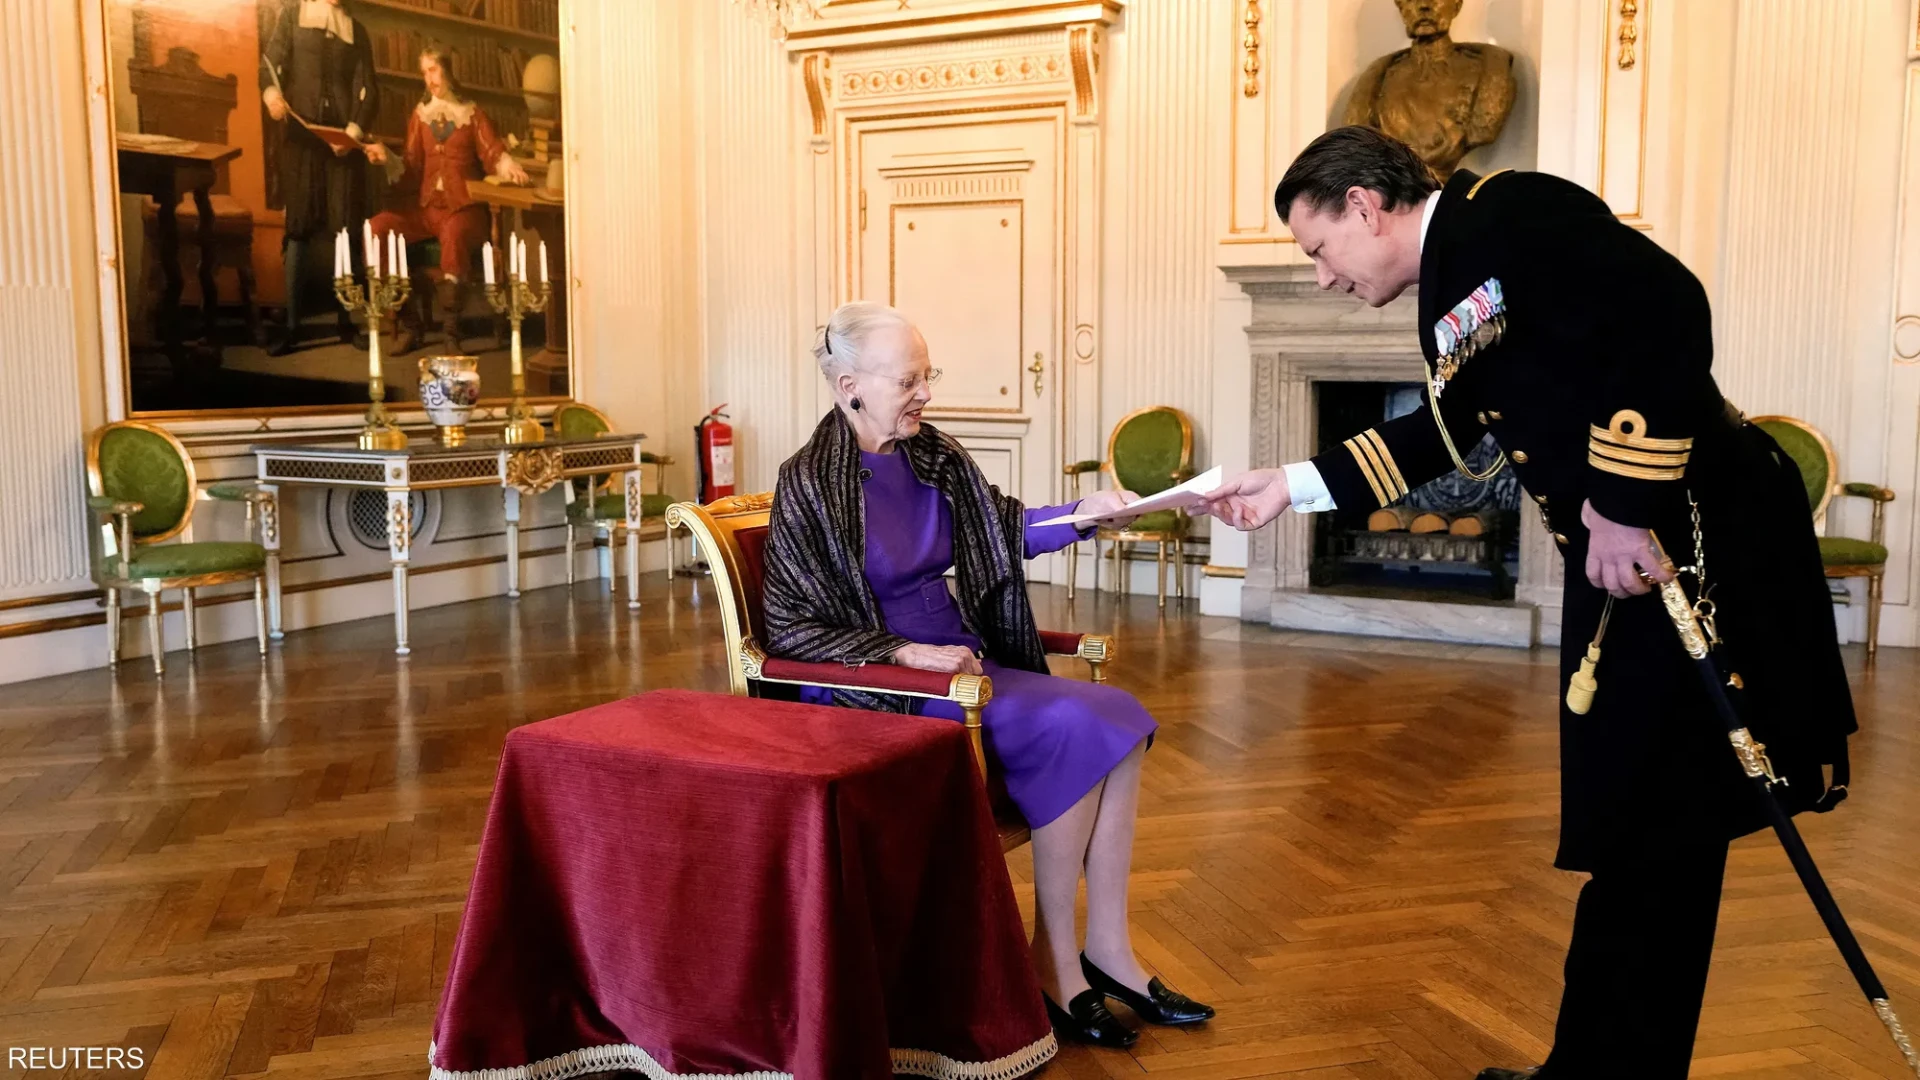 Denmark's Queen renounces the throne